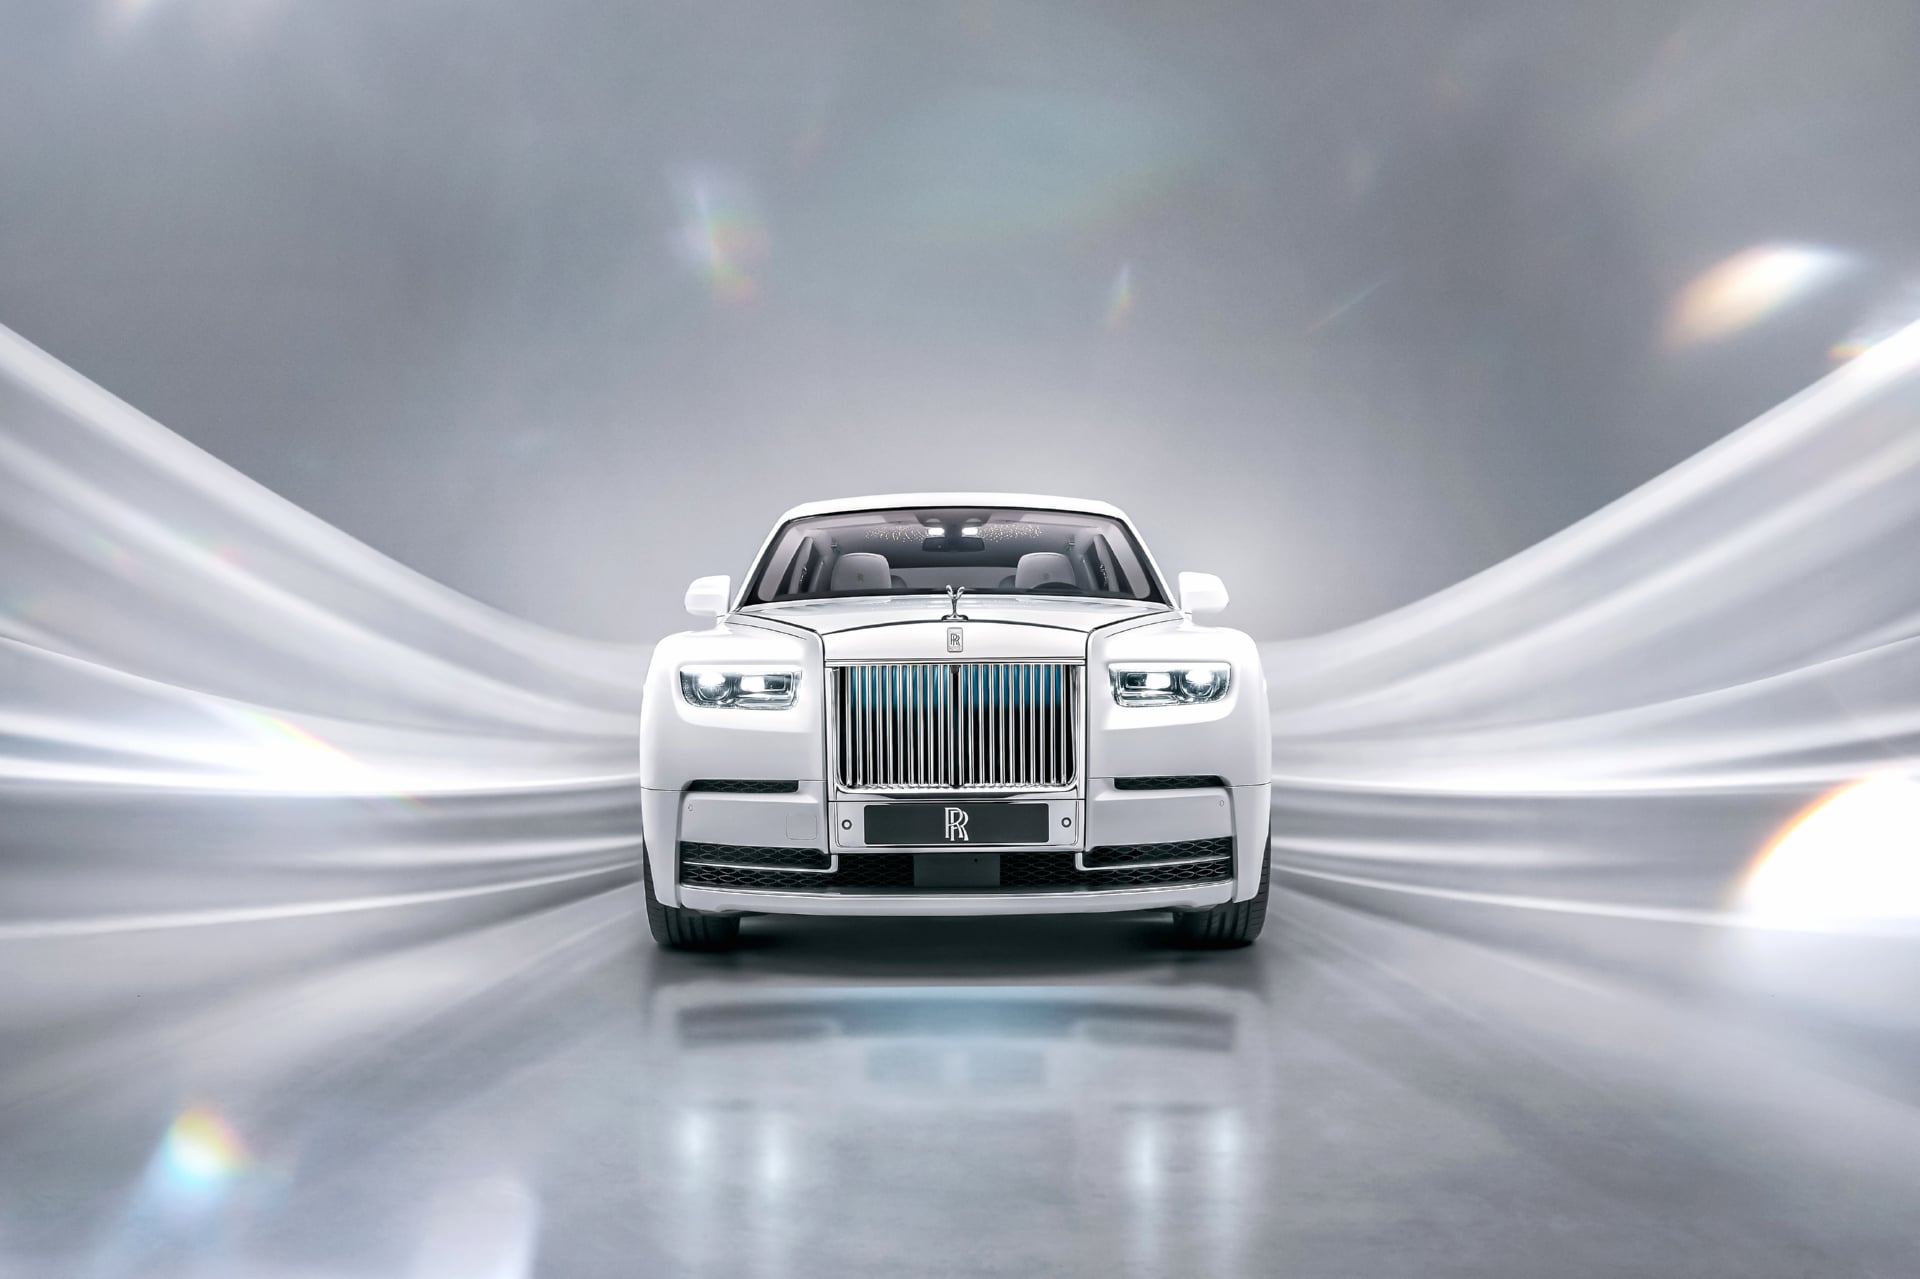 Rolls-Royce Phantom EWB Platino at 1152 x 864 size wallpapers HD quality